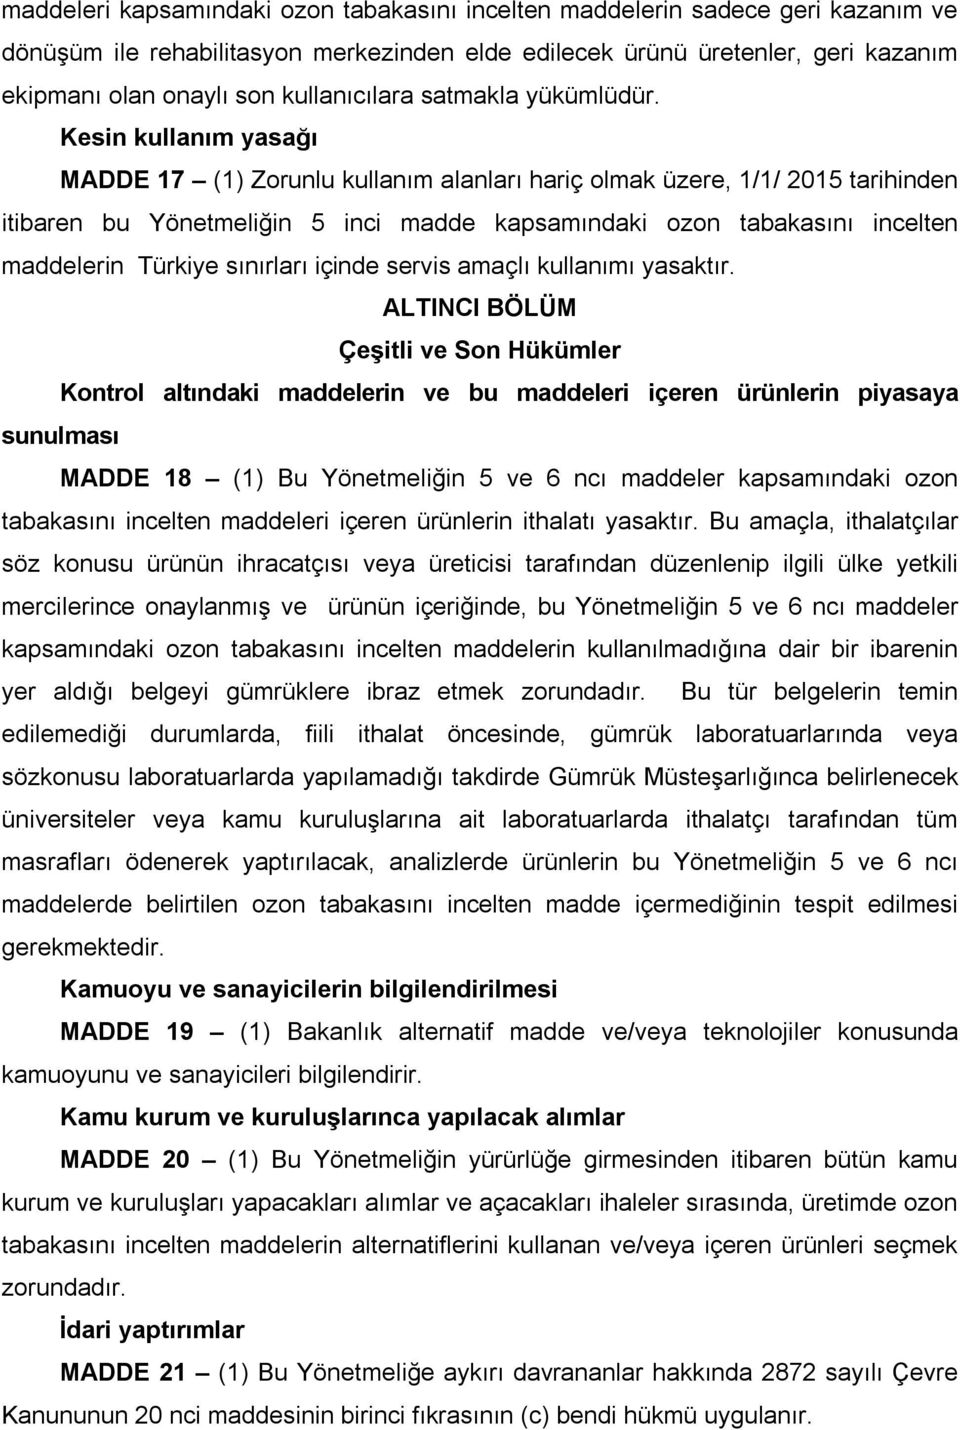 Kesin kullanım yasağı MADDE 17 (1) Zorunlu kullanım alanları hariç olmak üzere, 1/1/ 2015 tarihinden itibaren bu Yönetmeliğin 5 inci madde kapsamındaki ozon tabakasını incelten maddelerin Türkiye